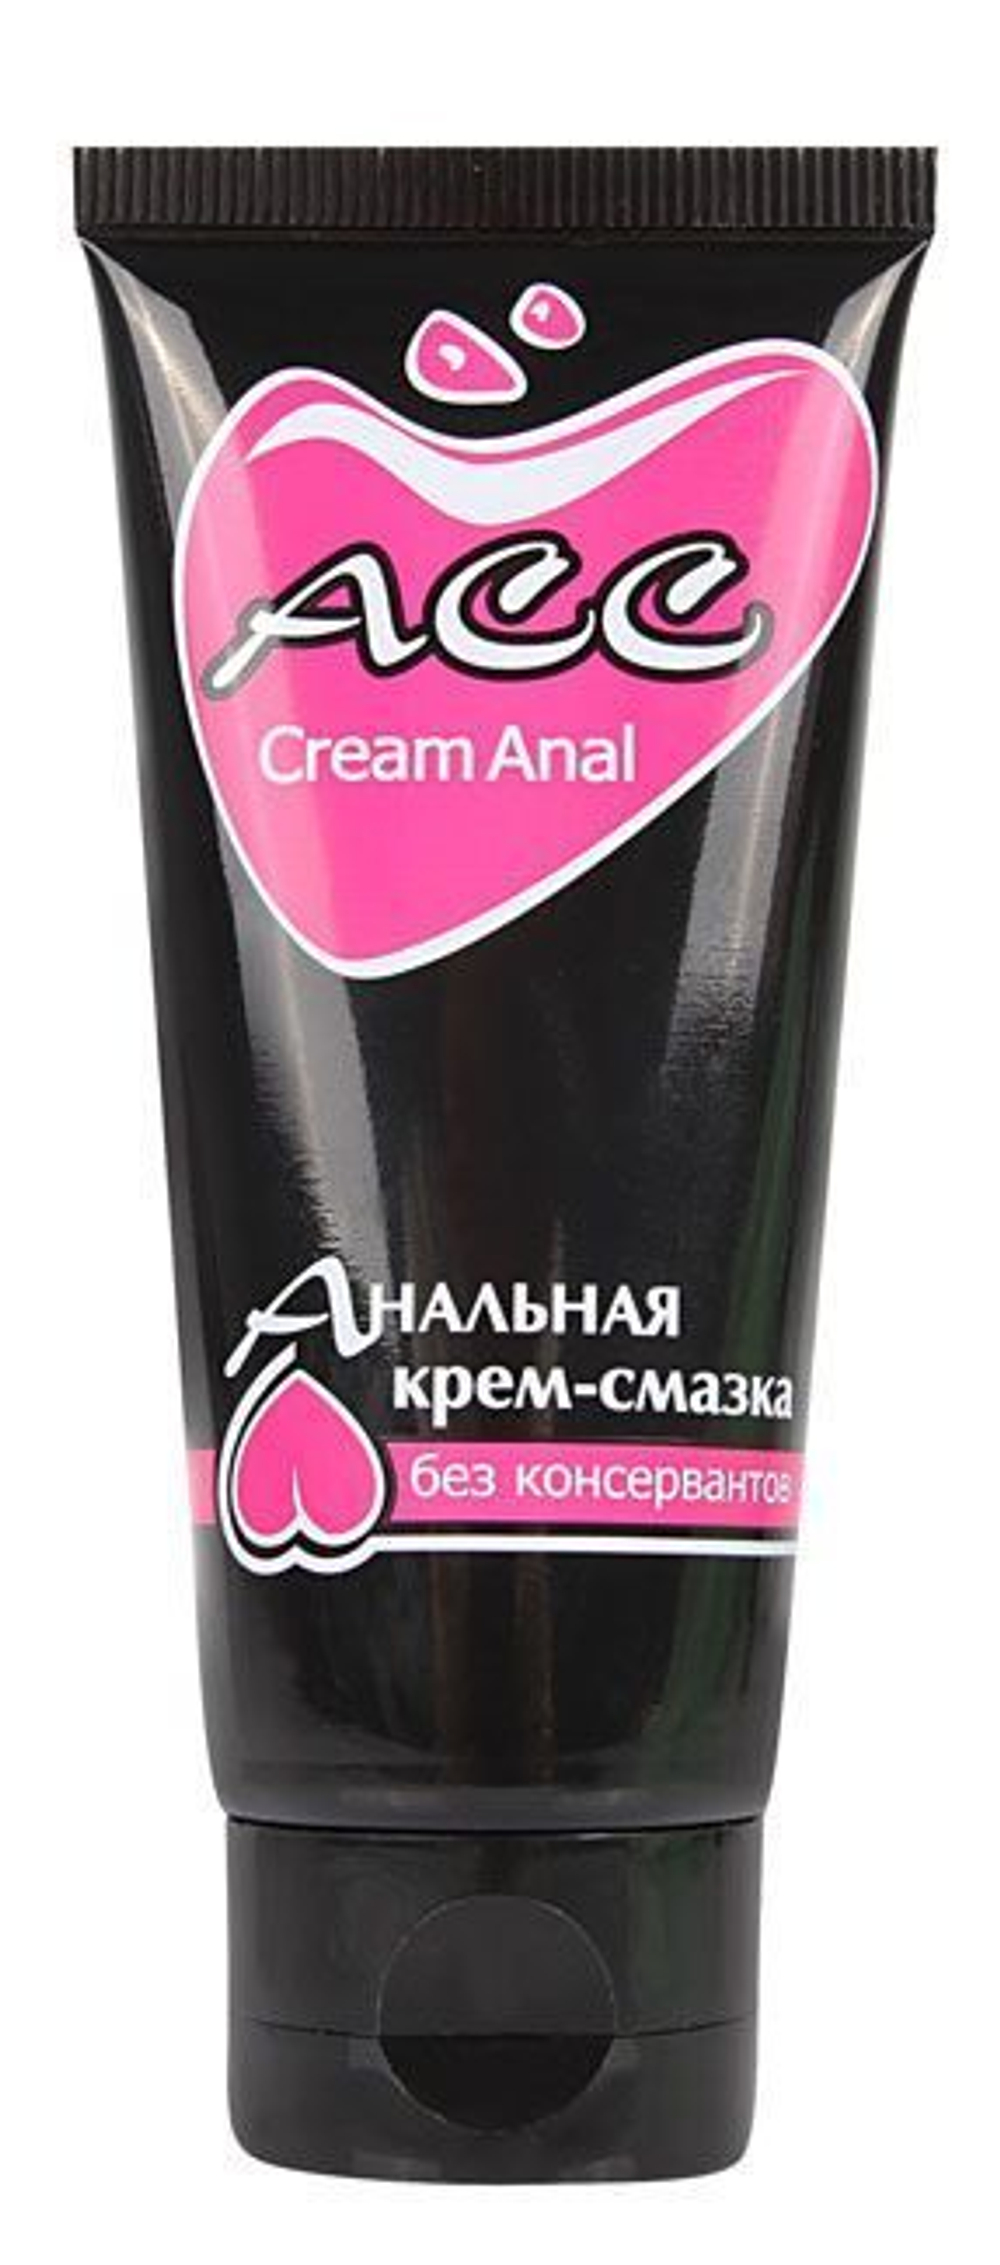 Анальная крем-смазка Creamanal АСС - 50 мл.